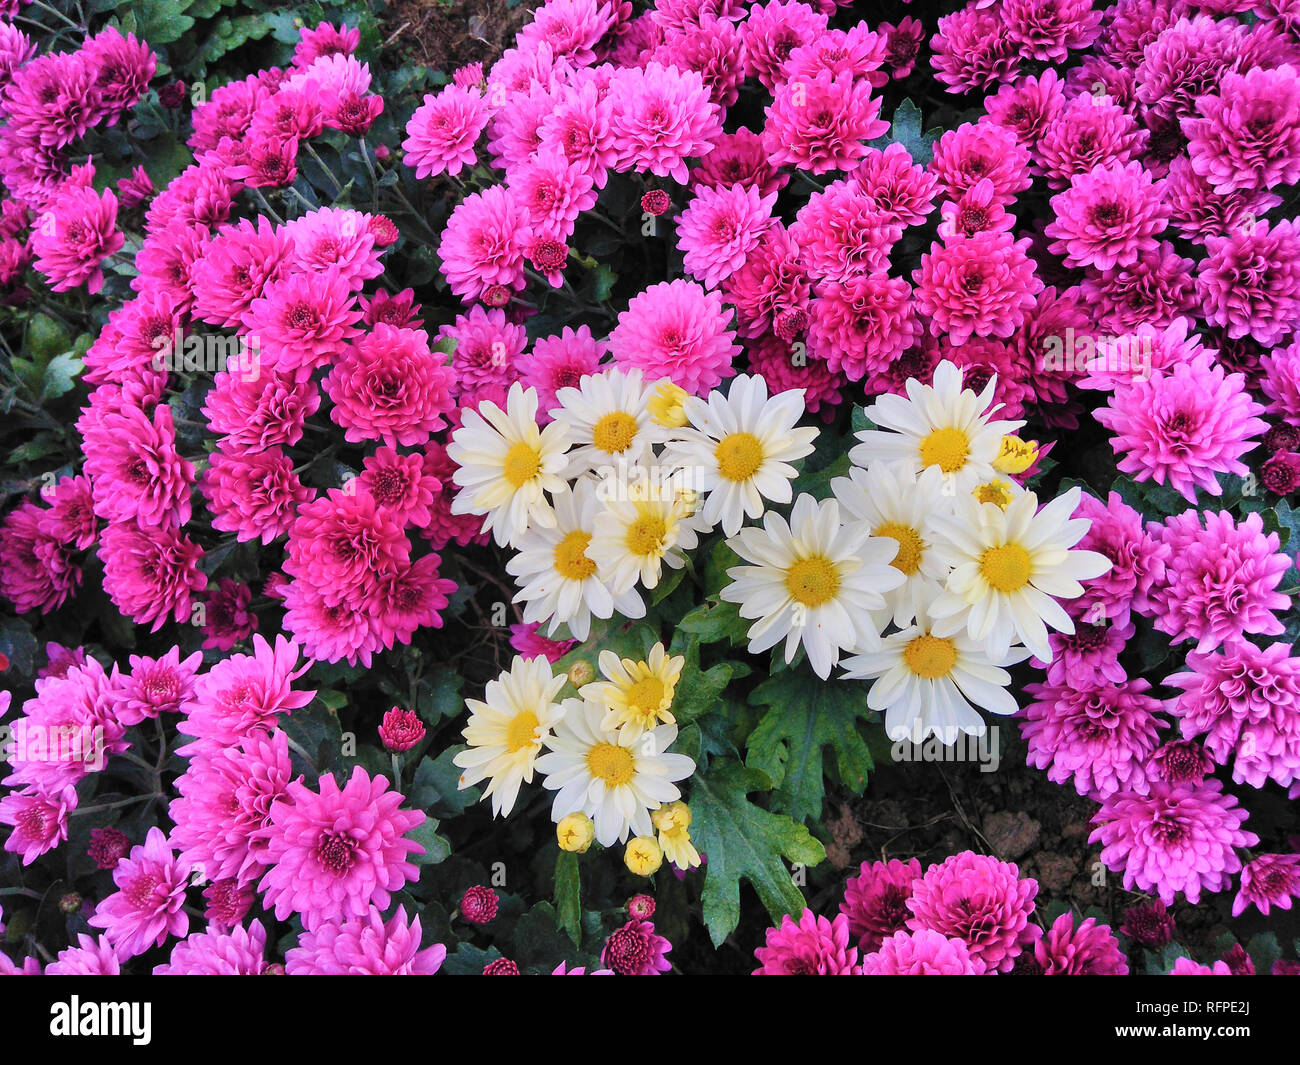 Mixed Purple Chrysanthemum White Daisy Flowers Background Stock Photo